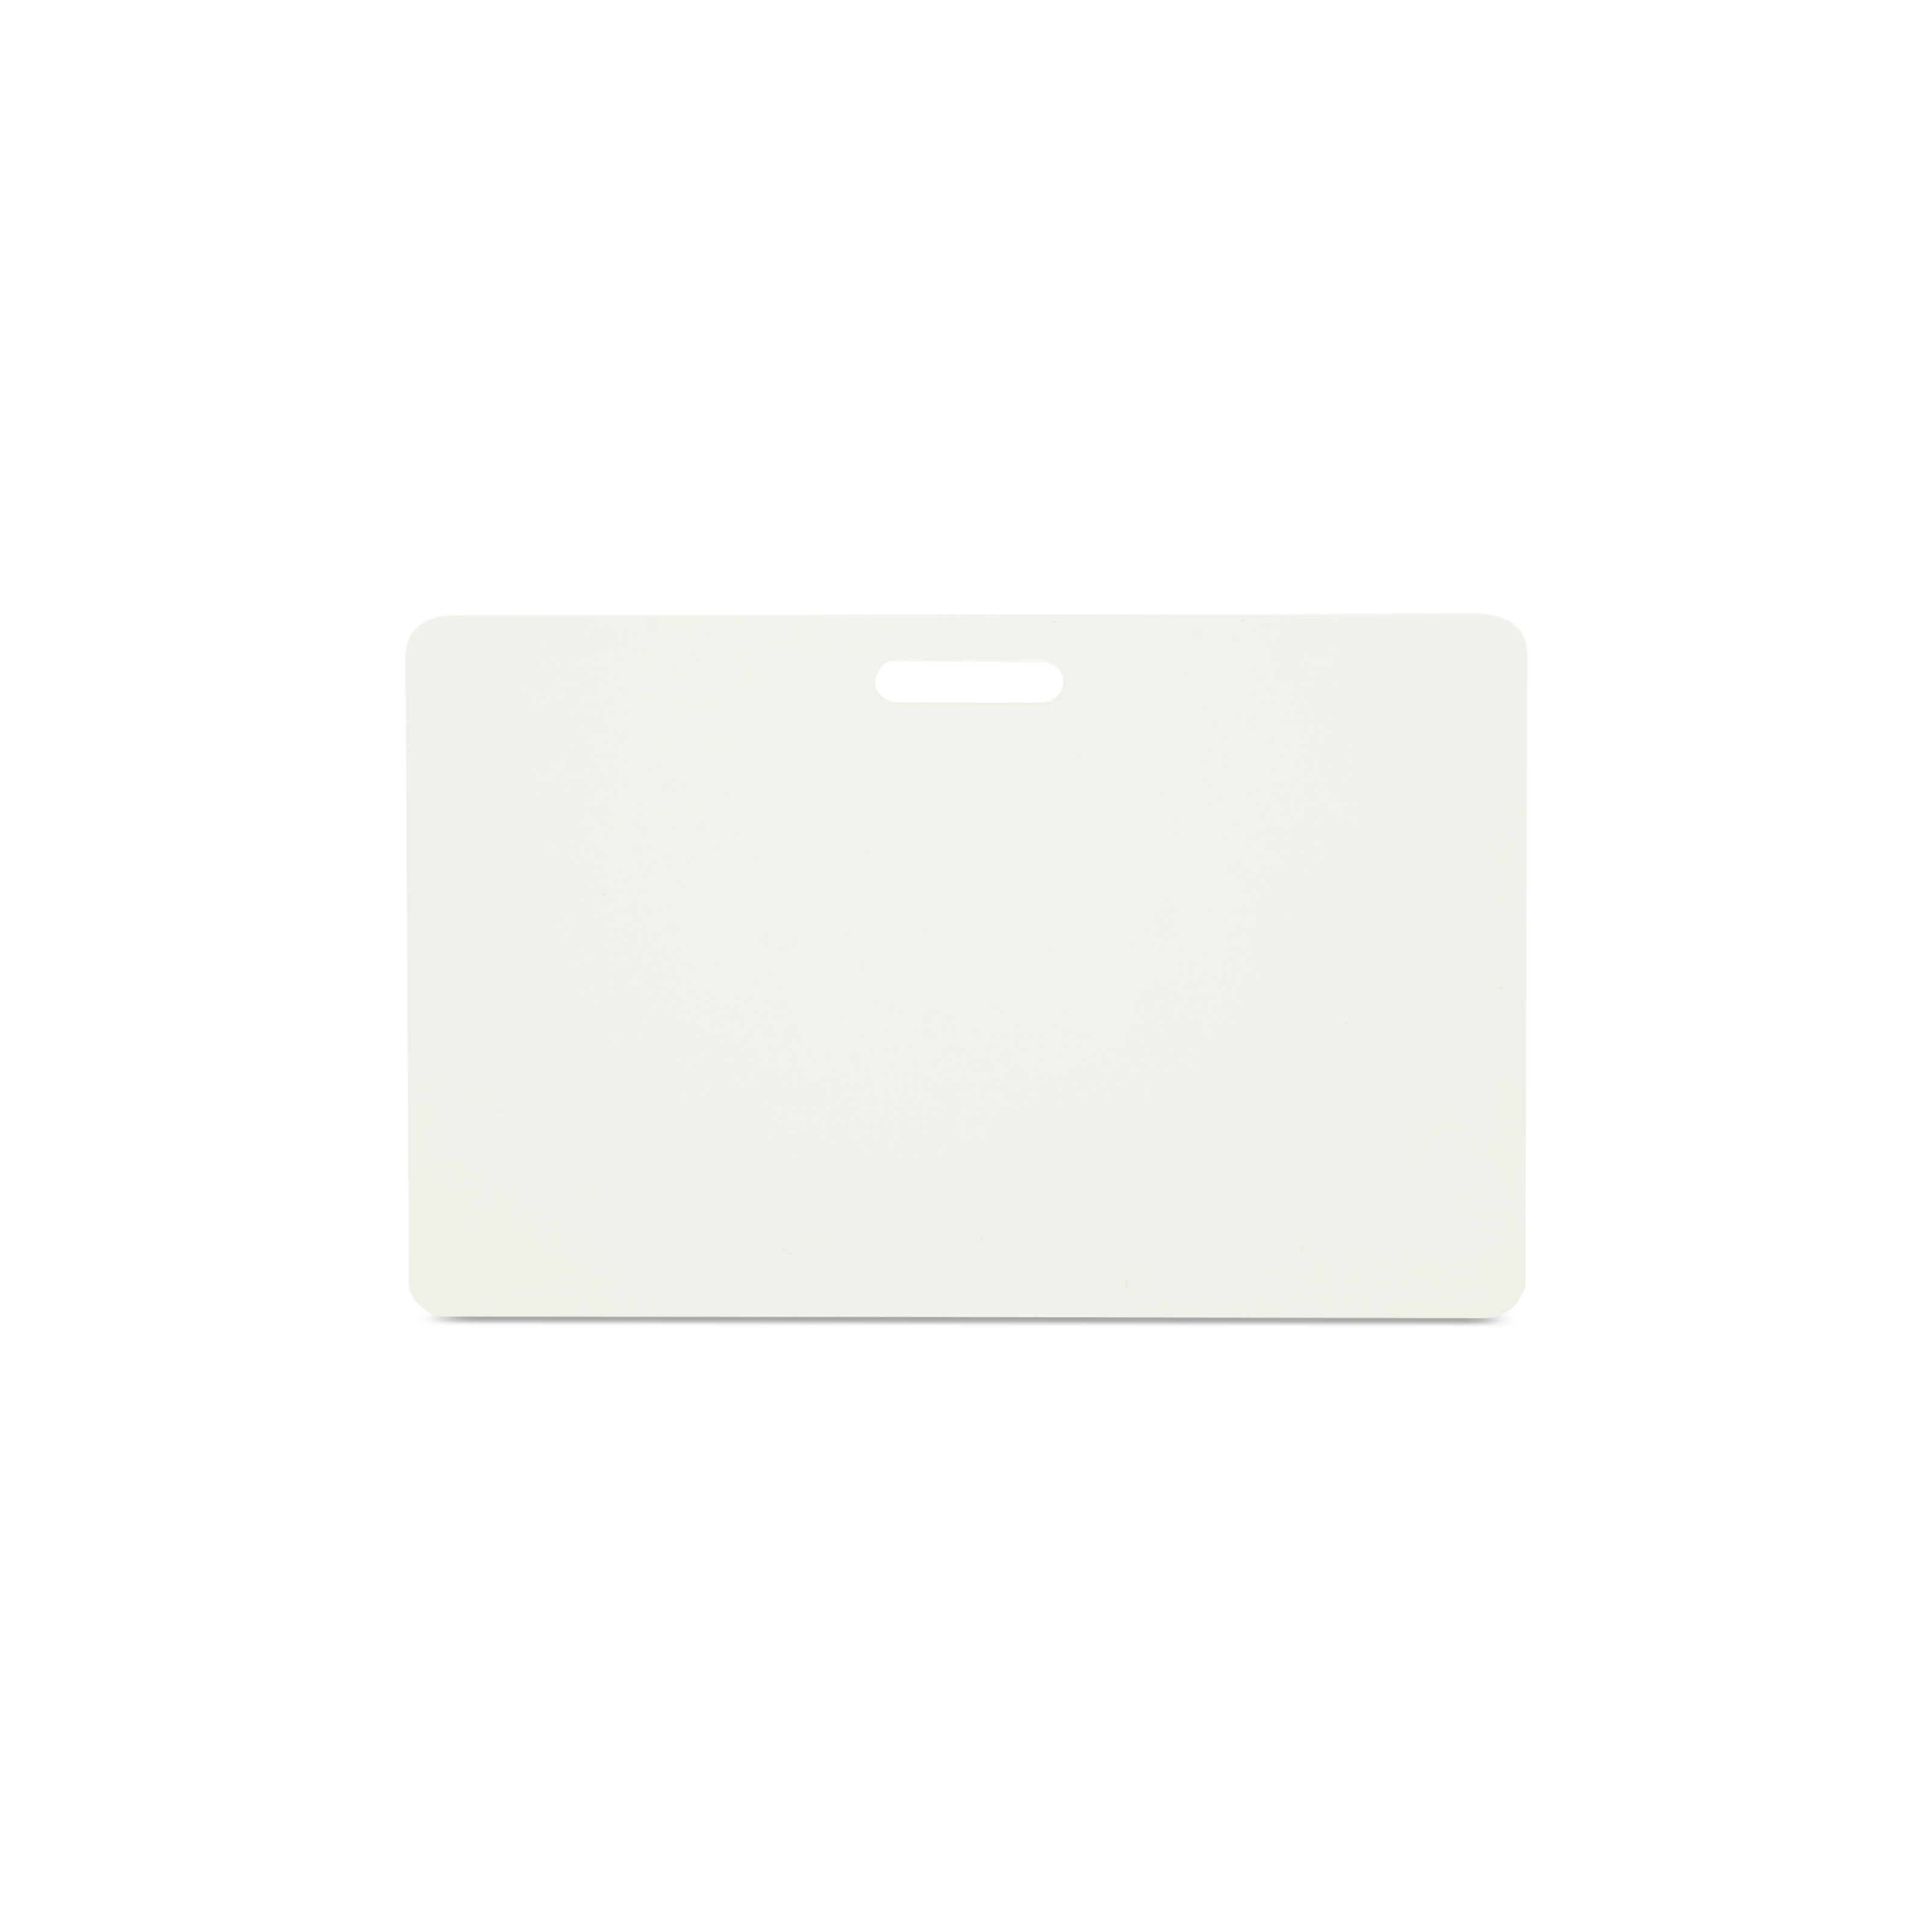 NFC Karte PVC - 85,6 x 54 mm - NTAG216 - 924 Byte - weiß - Querformat mit Schlitz